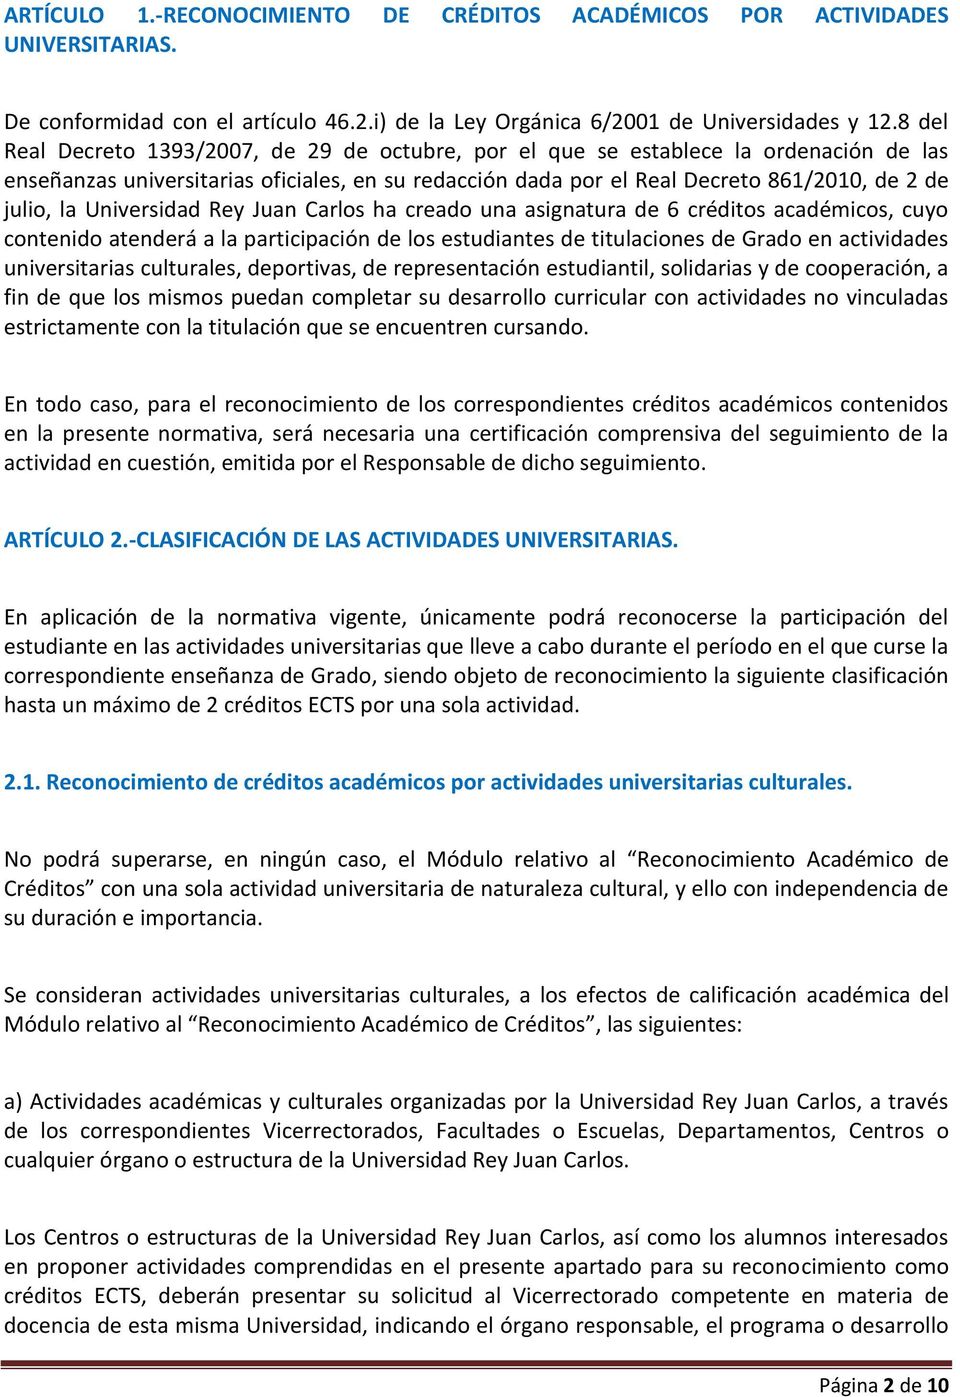 Universidad Rey Juan Carlos ha creado una asignatura de 6 créditos académicos, cuyo contenido atenderá a la participación de los estudiantes de titulaciones de Grado en actividades universitarias